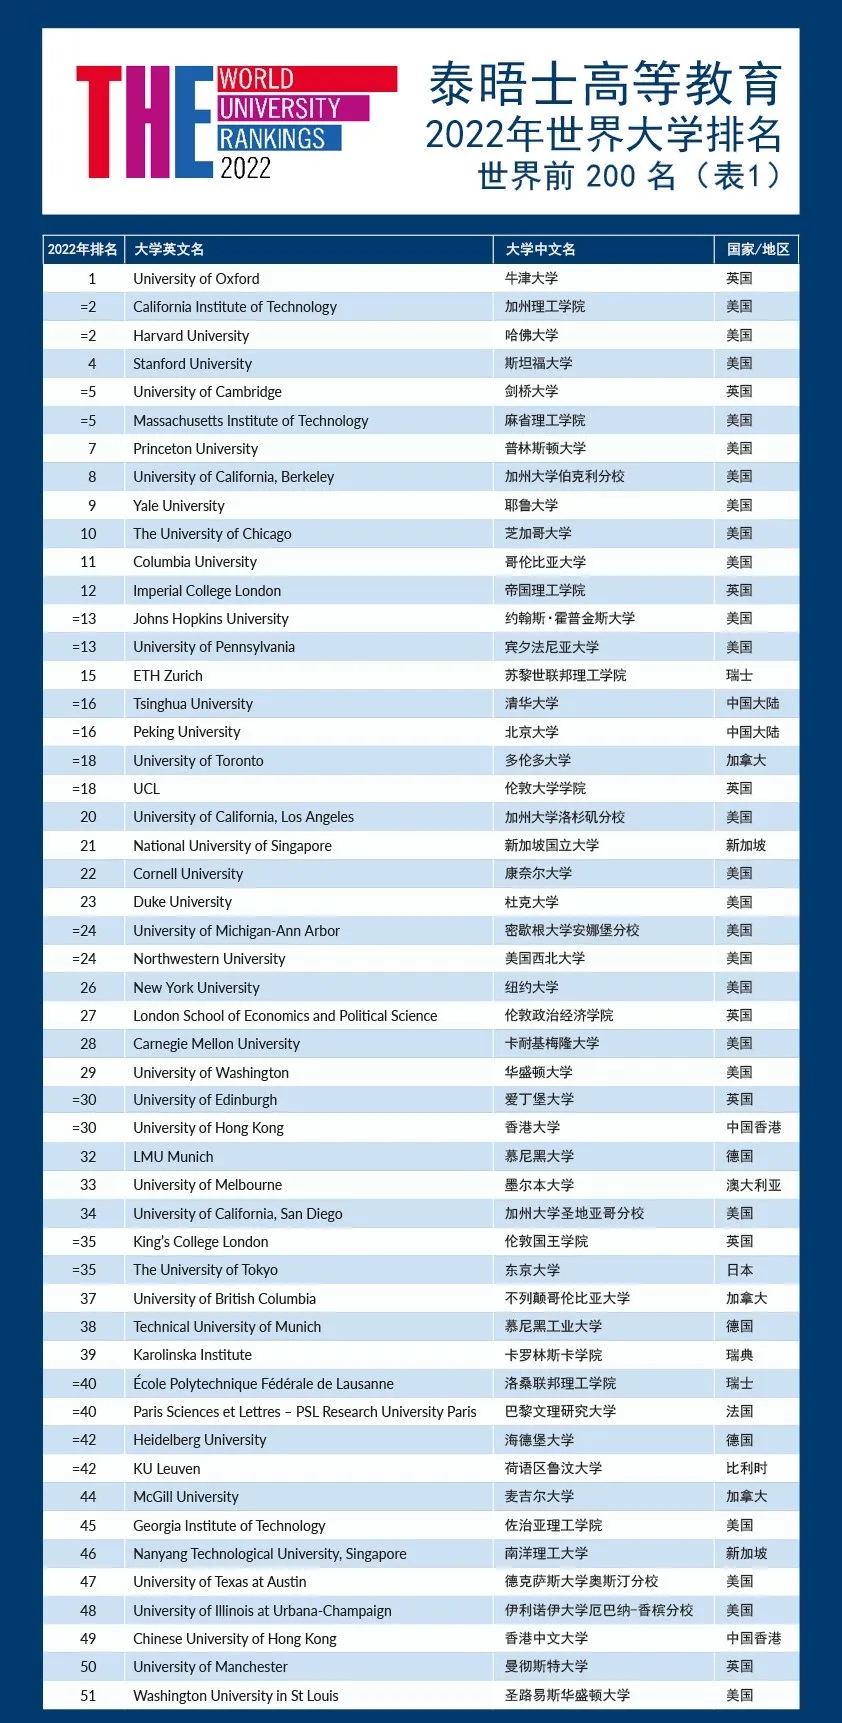 2022泰晤士高等教育世界大学排名发布!美国高校霸榜!